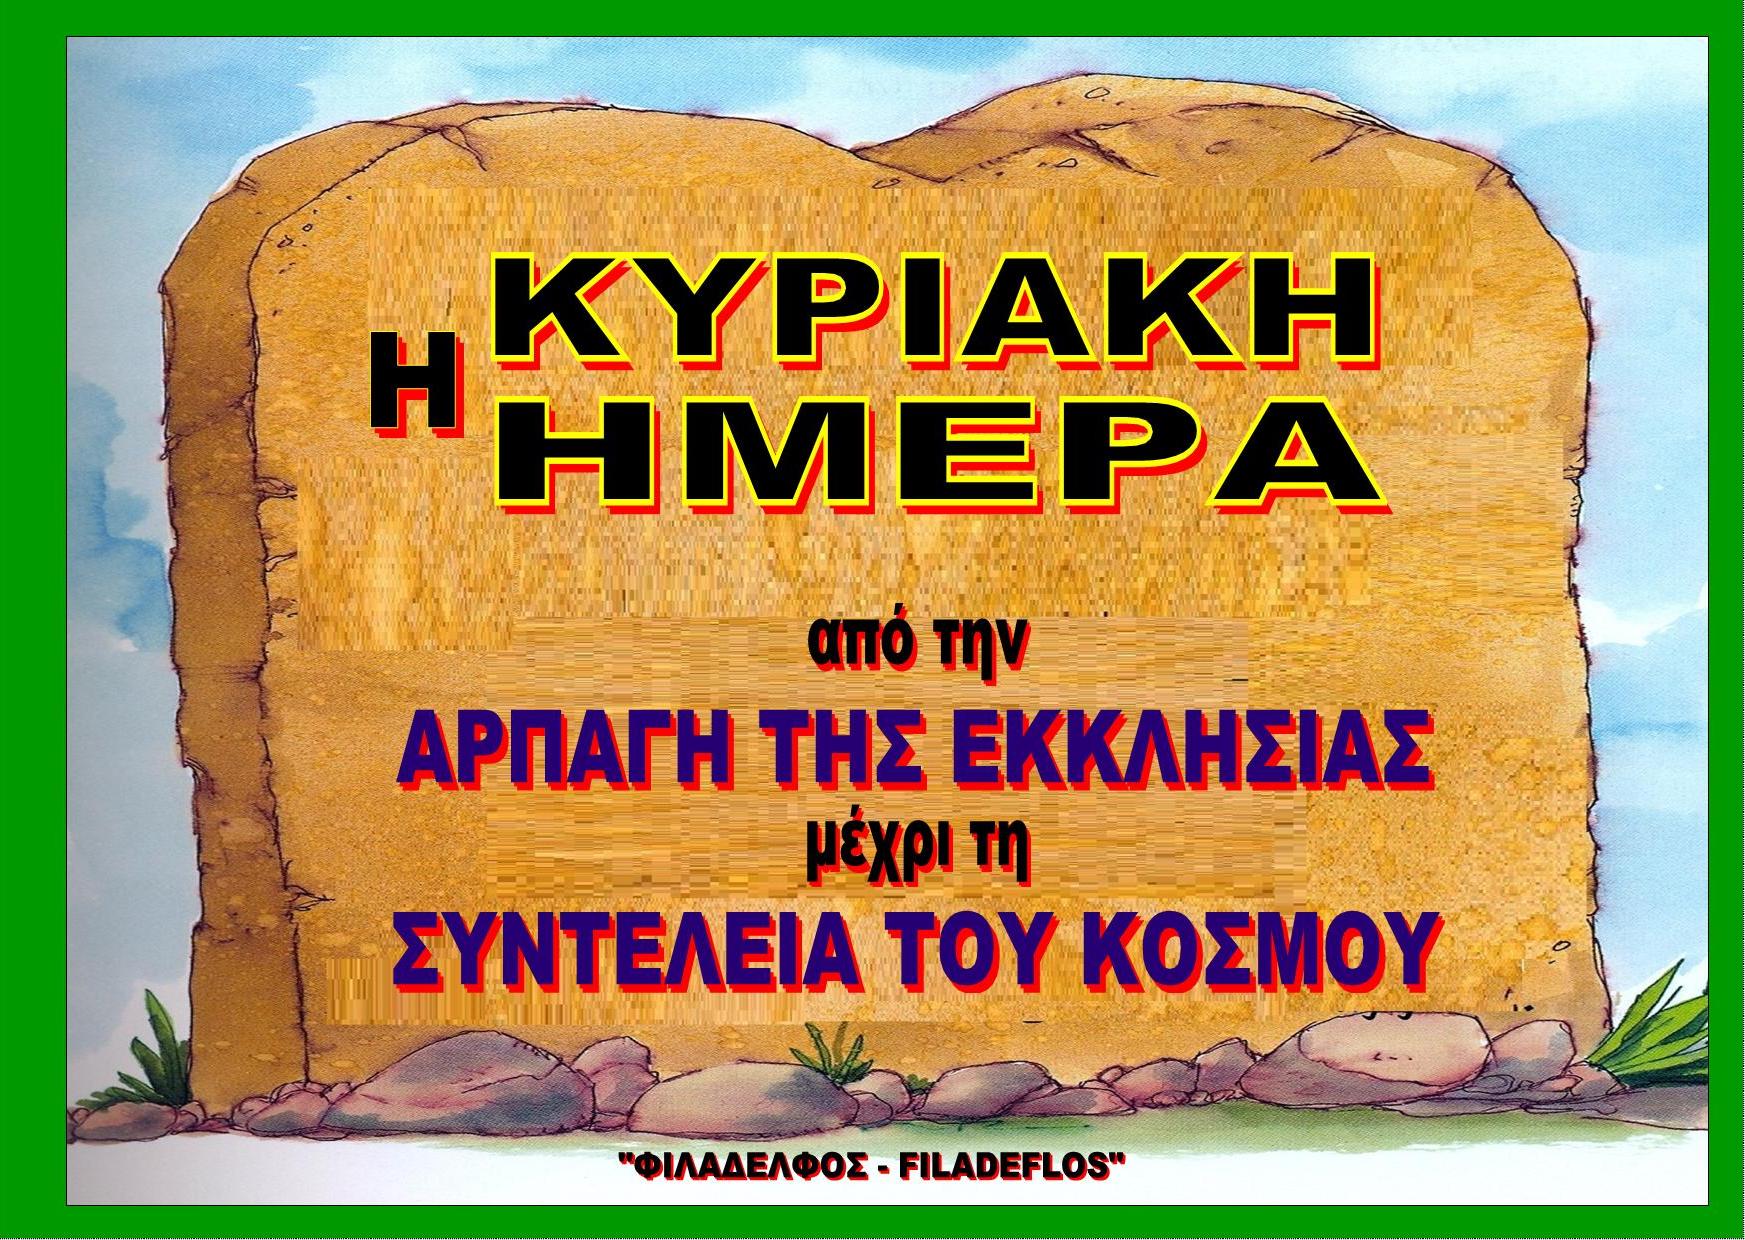 KYPIAKH HMEPA XPONIKH POREIA 00